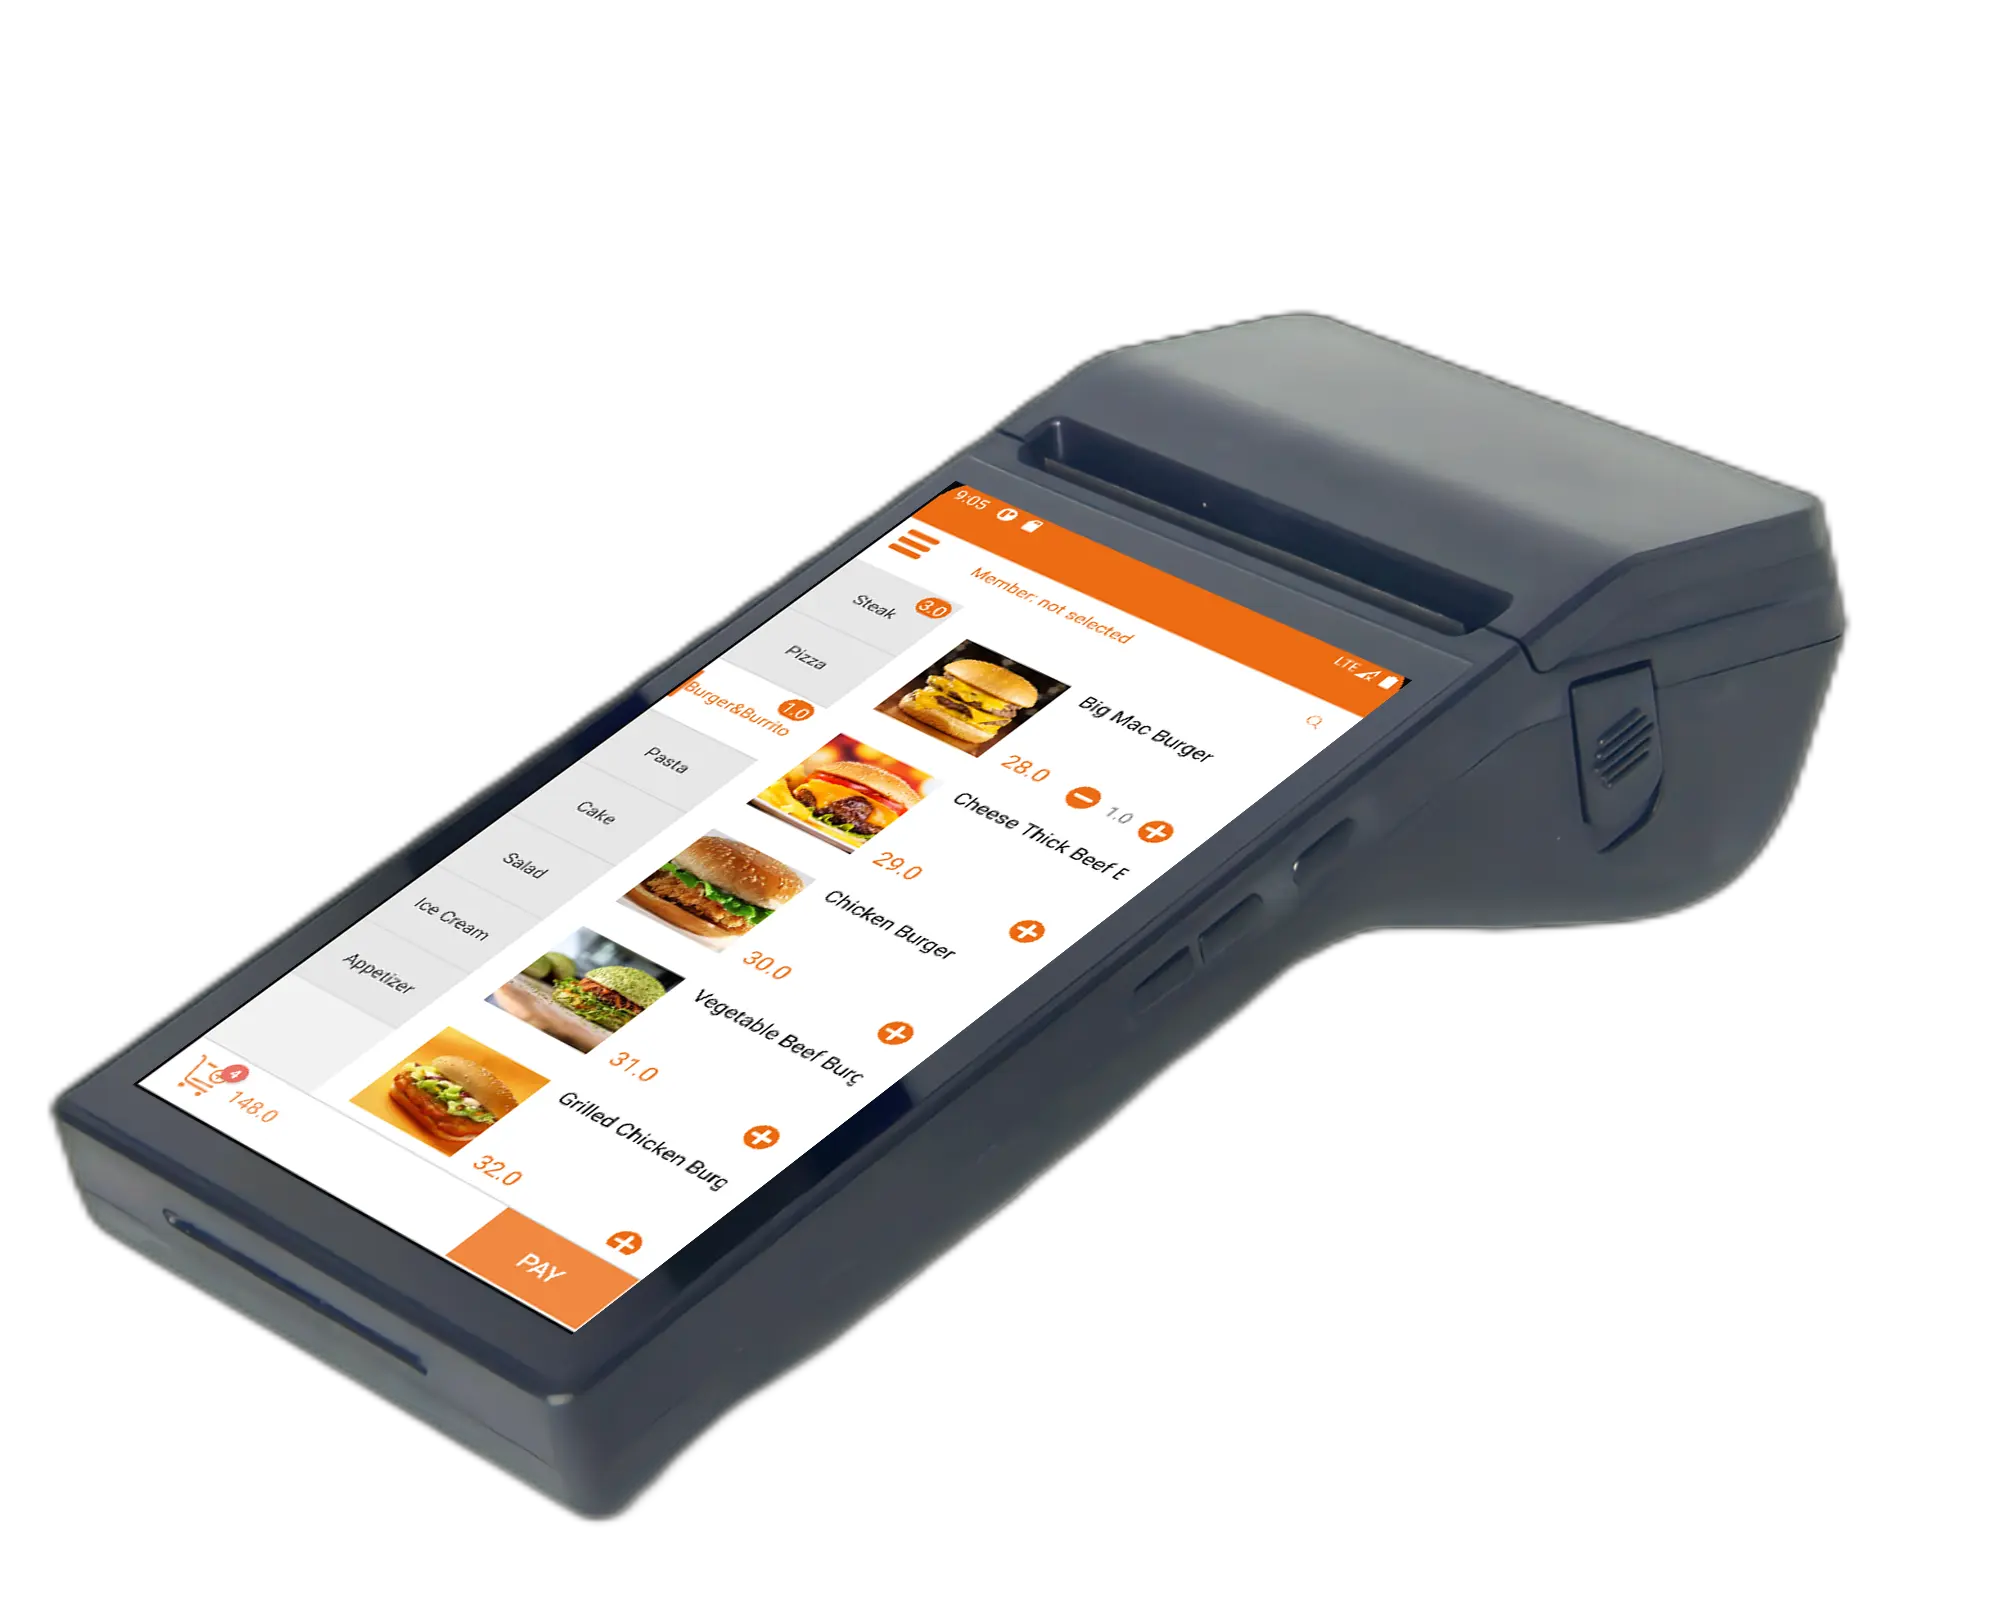 7 дюймов POS Android система выставления счетов портативное устройство для оформления заказа со встроенным термопринтером и NFC для коммерческих розничных платежей